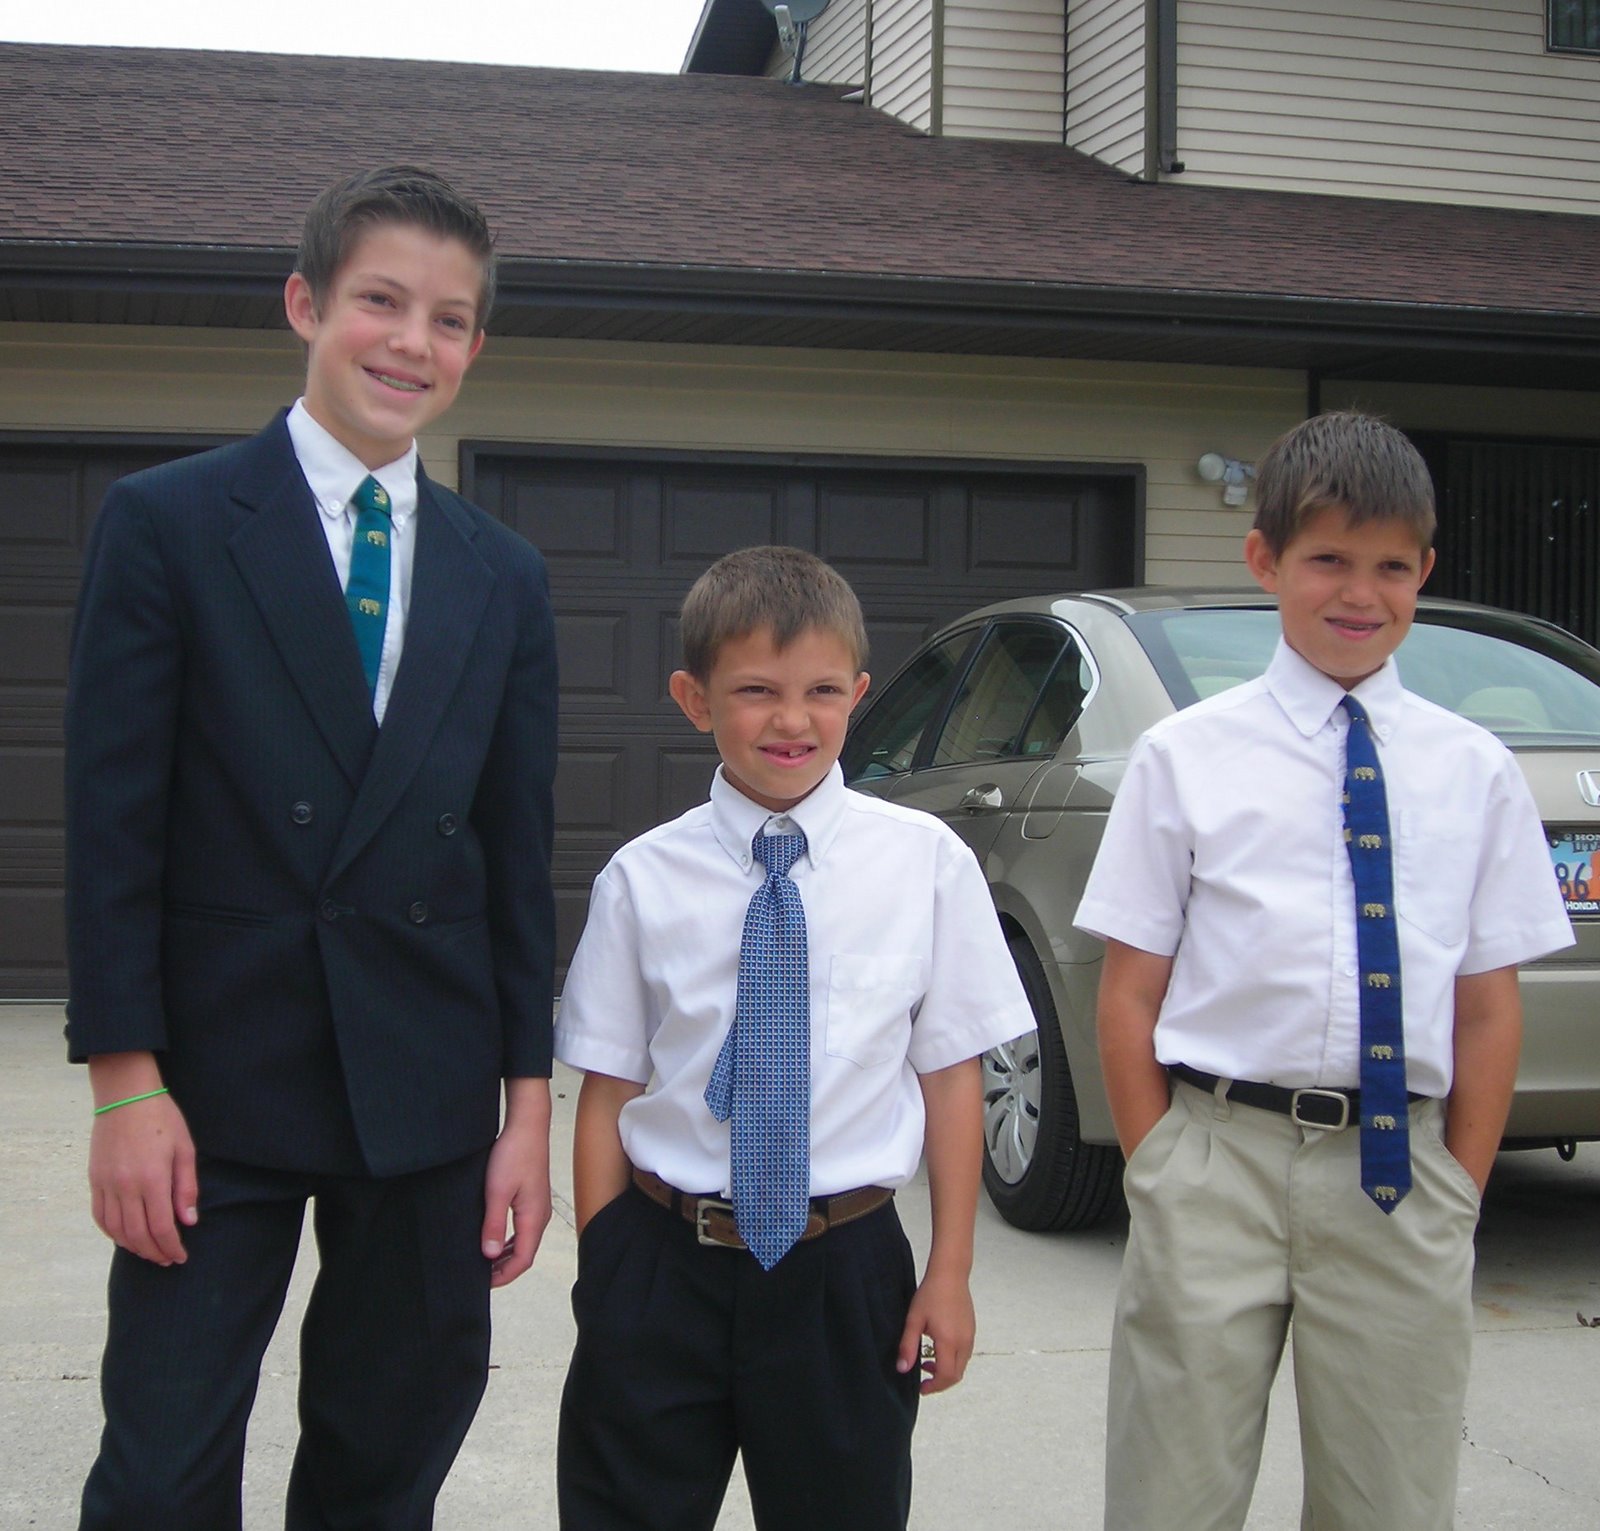 Boys all ready for Church